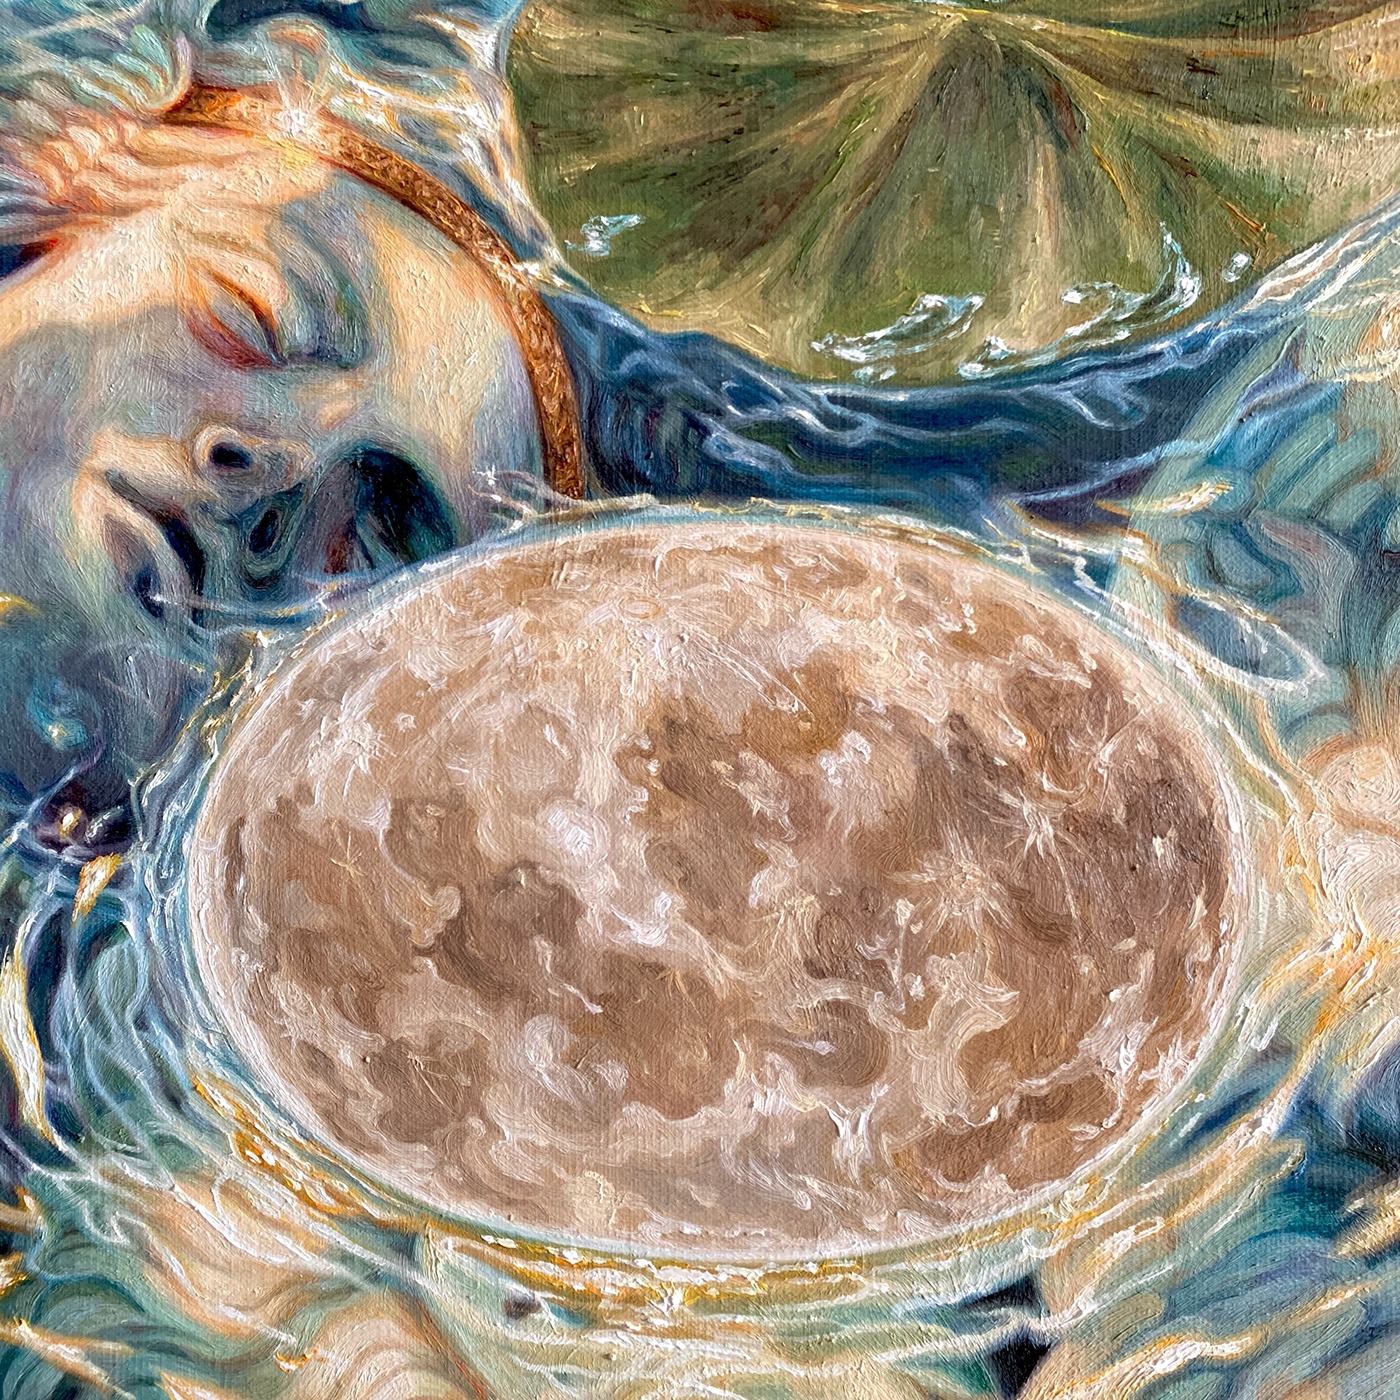 moonlight oilpainting persona waterlilies 달빛 유화 페르소나